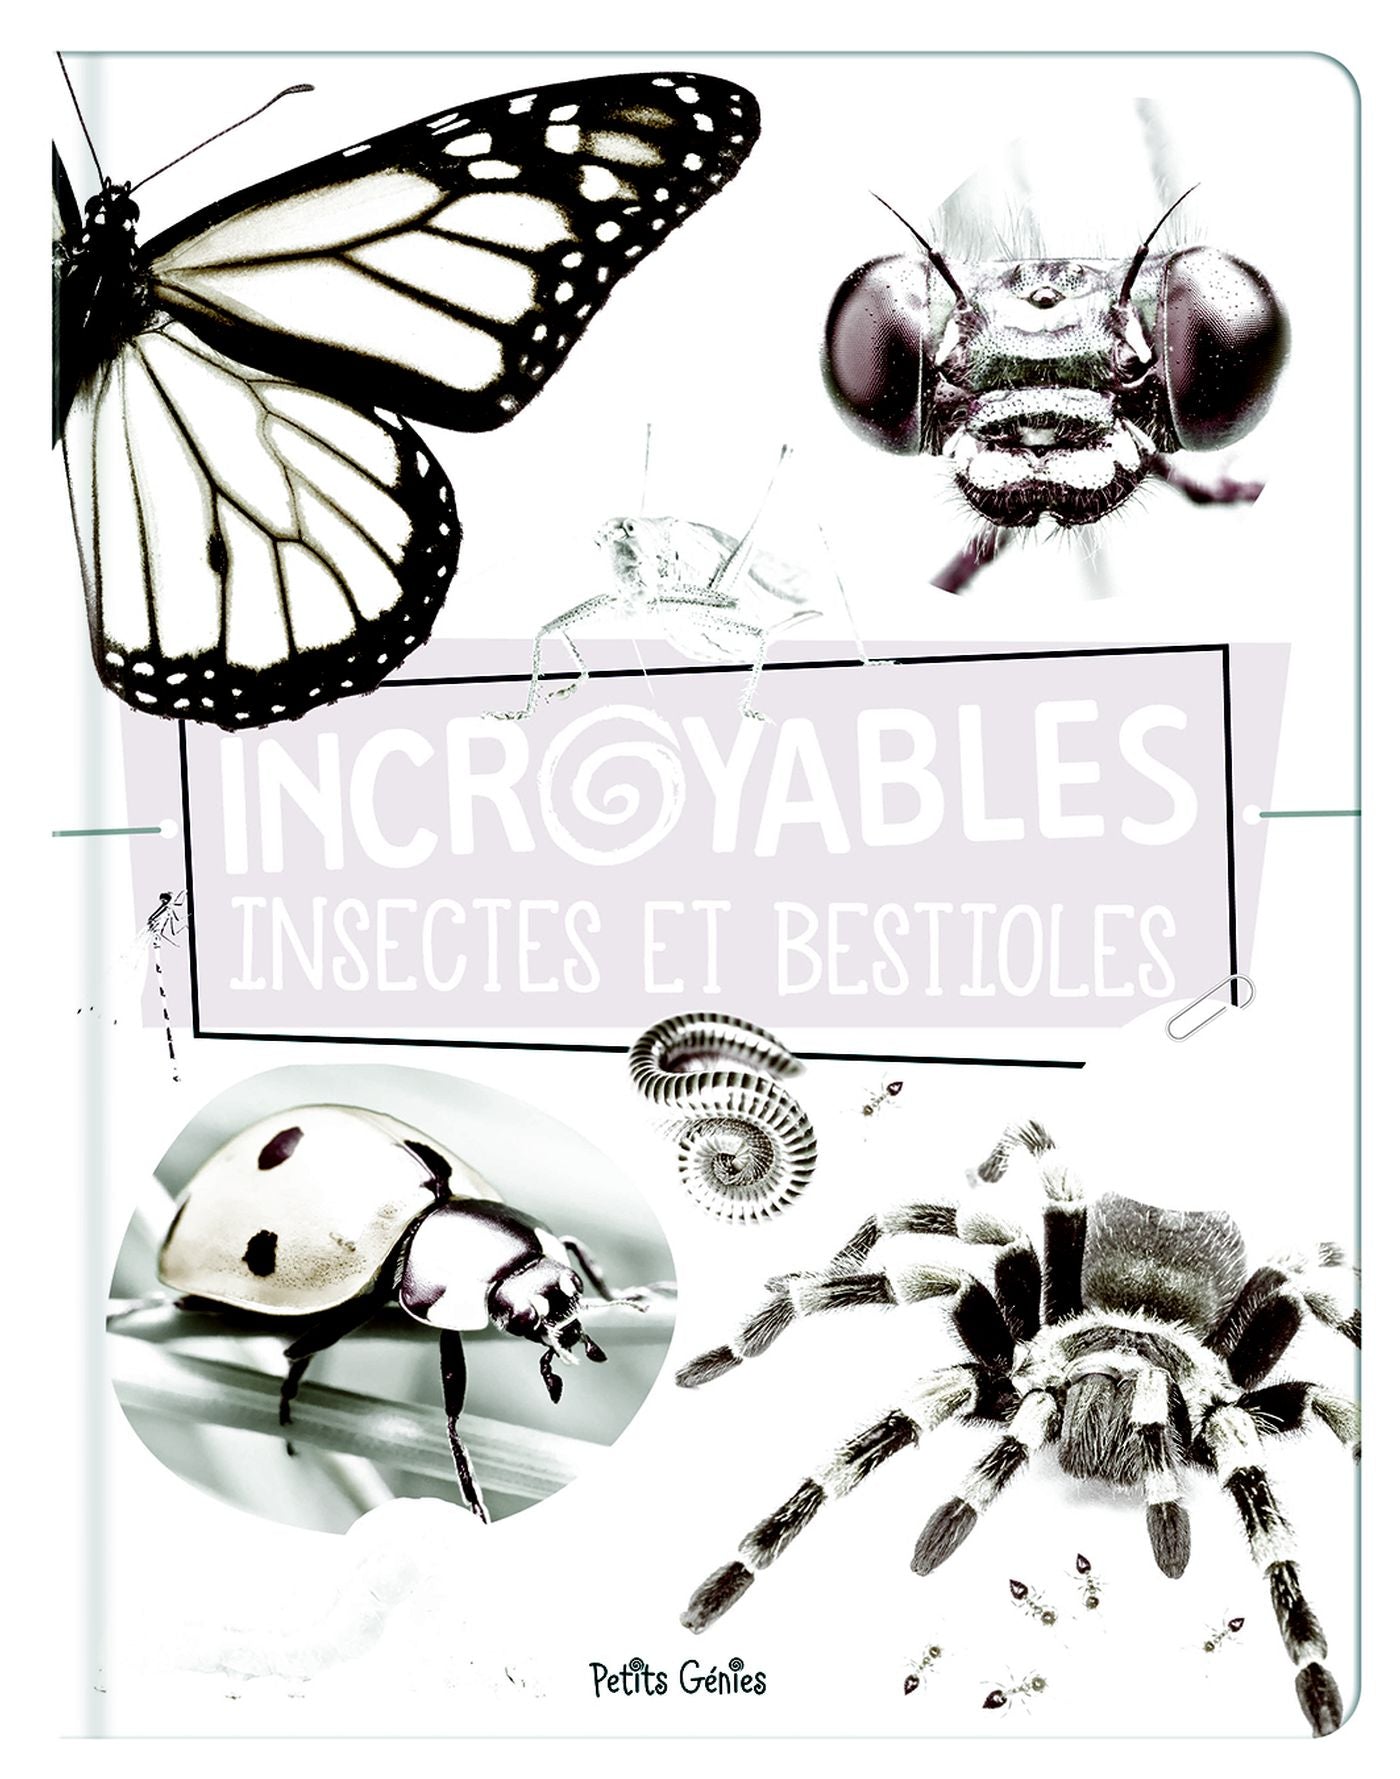 Incroyables insectes et bestioles - Danielle Robichaud